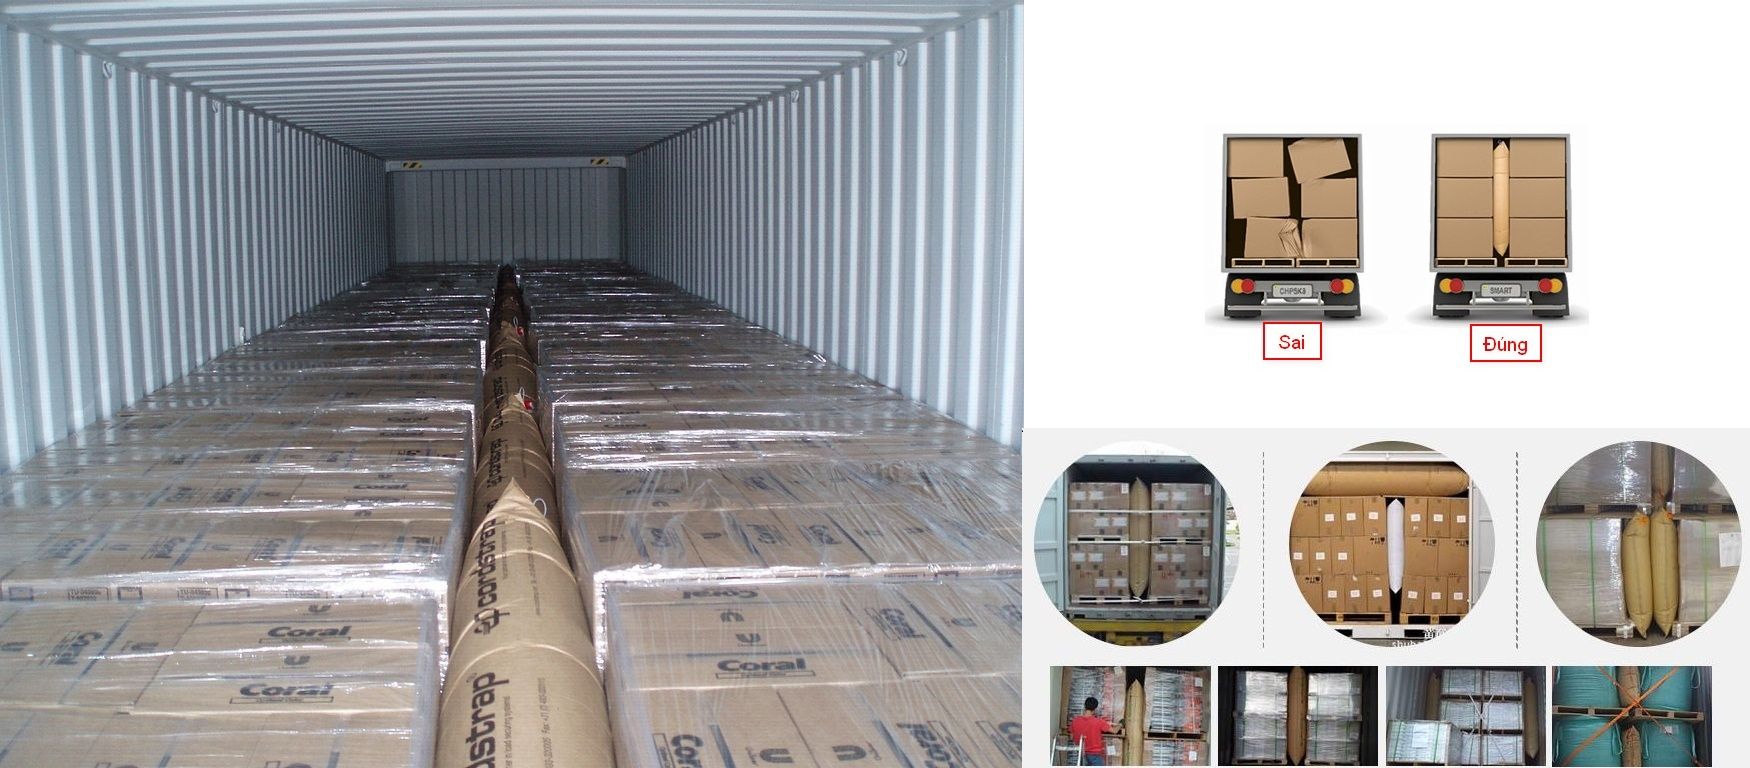 Những nguyên tắc cơ bản khi sắp xếp hàng hóa vào container thường bị bỏ qua